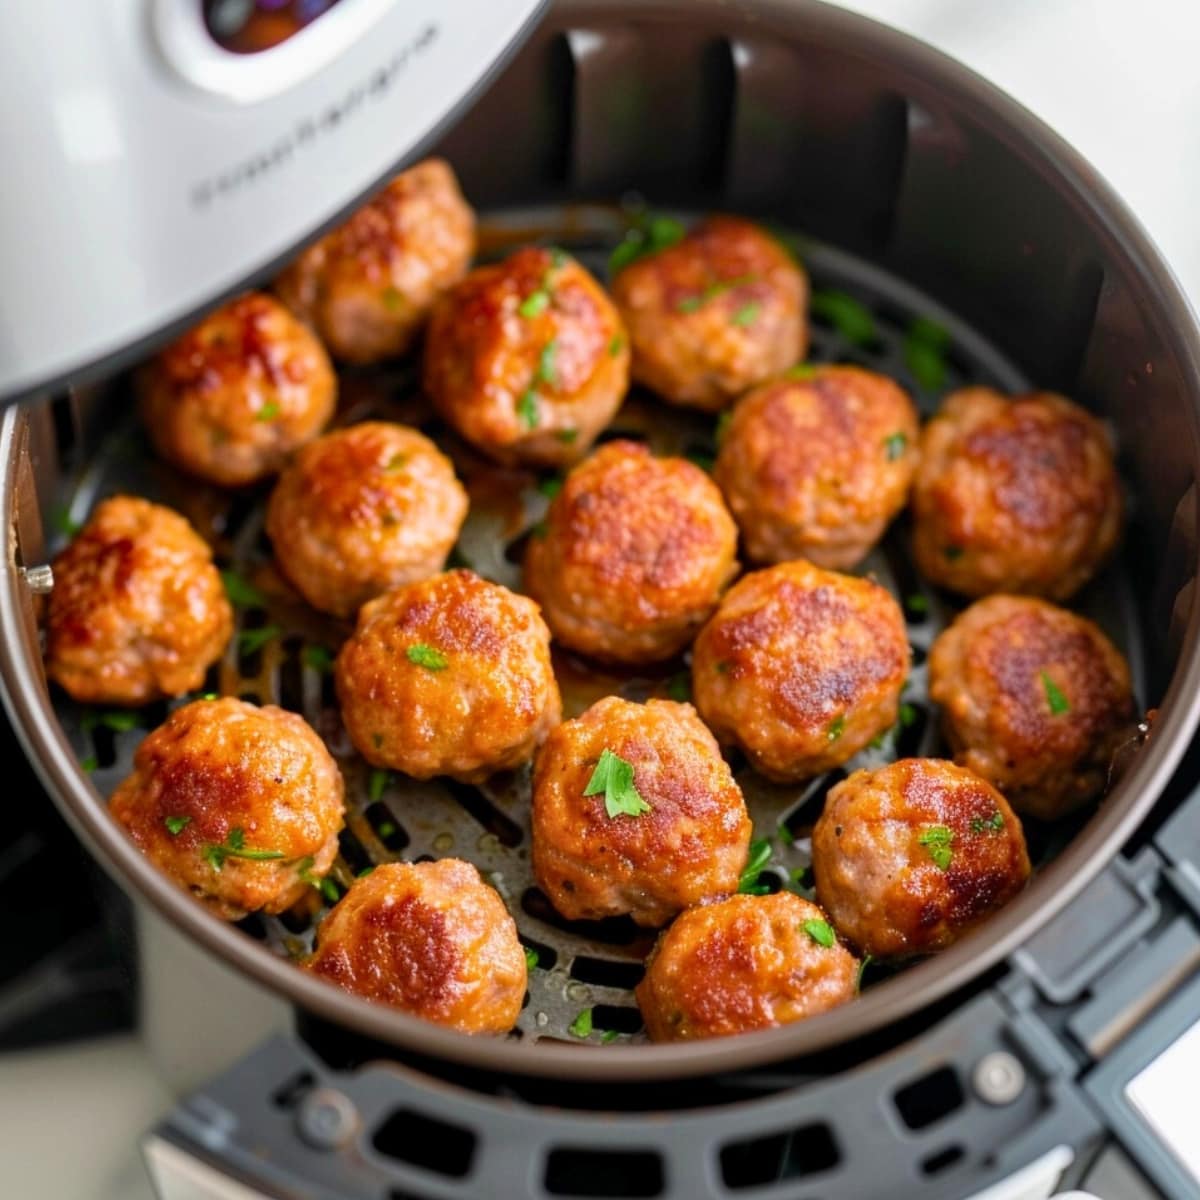 Meatballs arranged inside an air fryer.